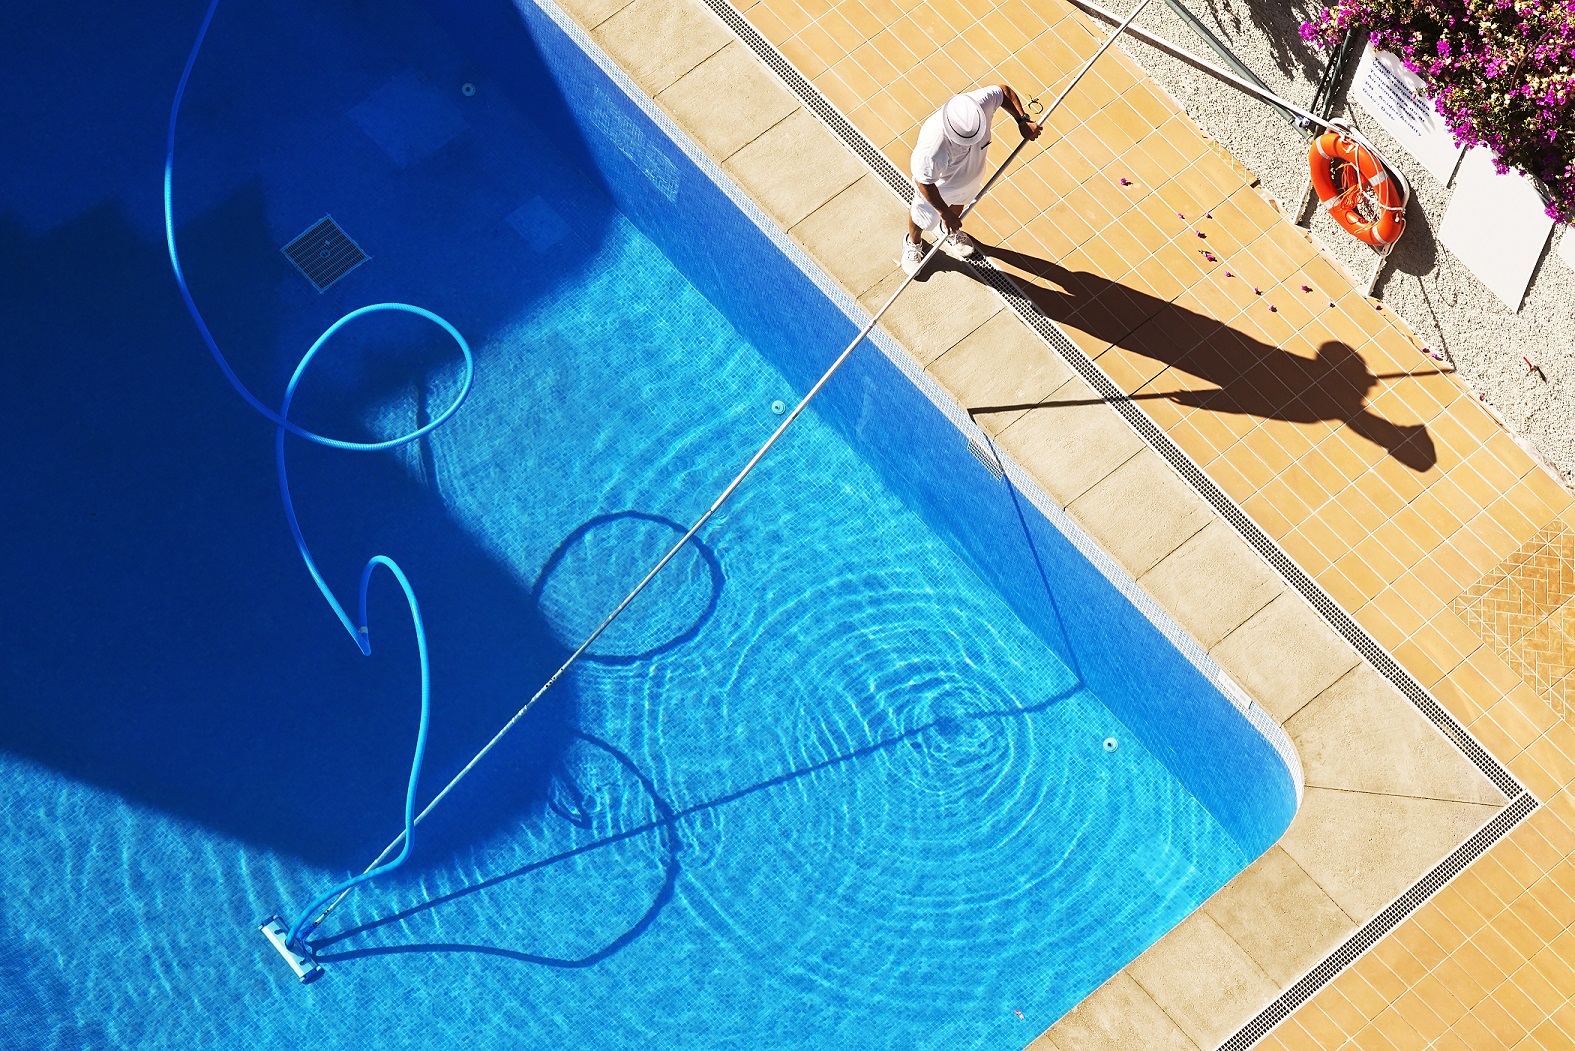 Entretien piscine : tout savoir pour un bassin et une eau propres